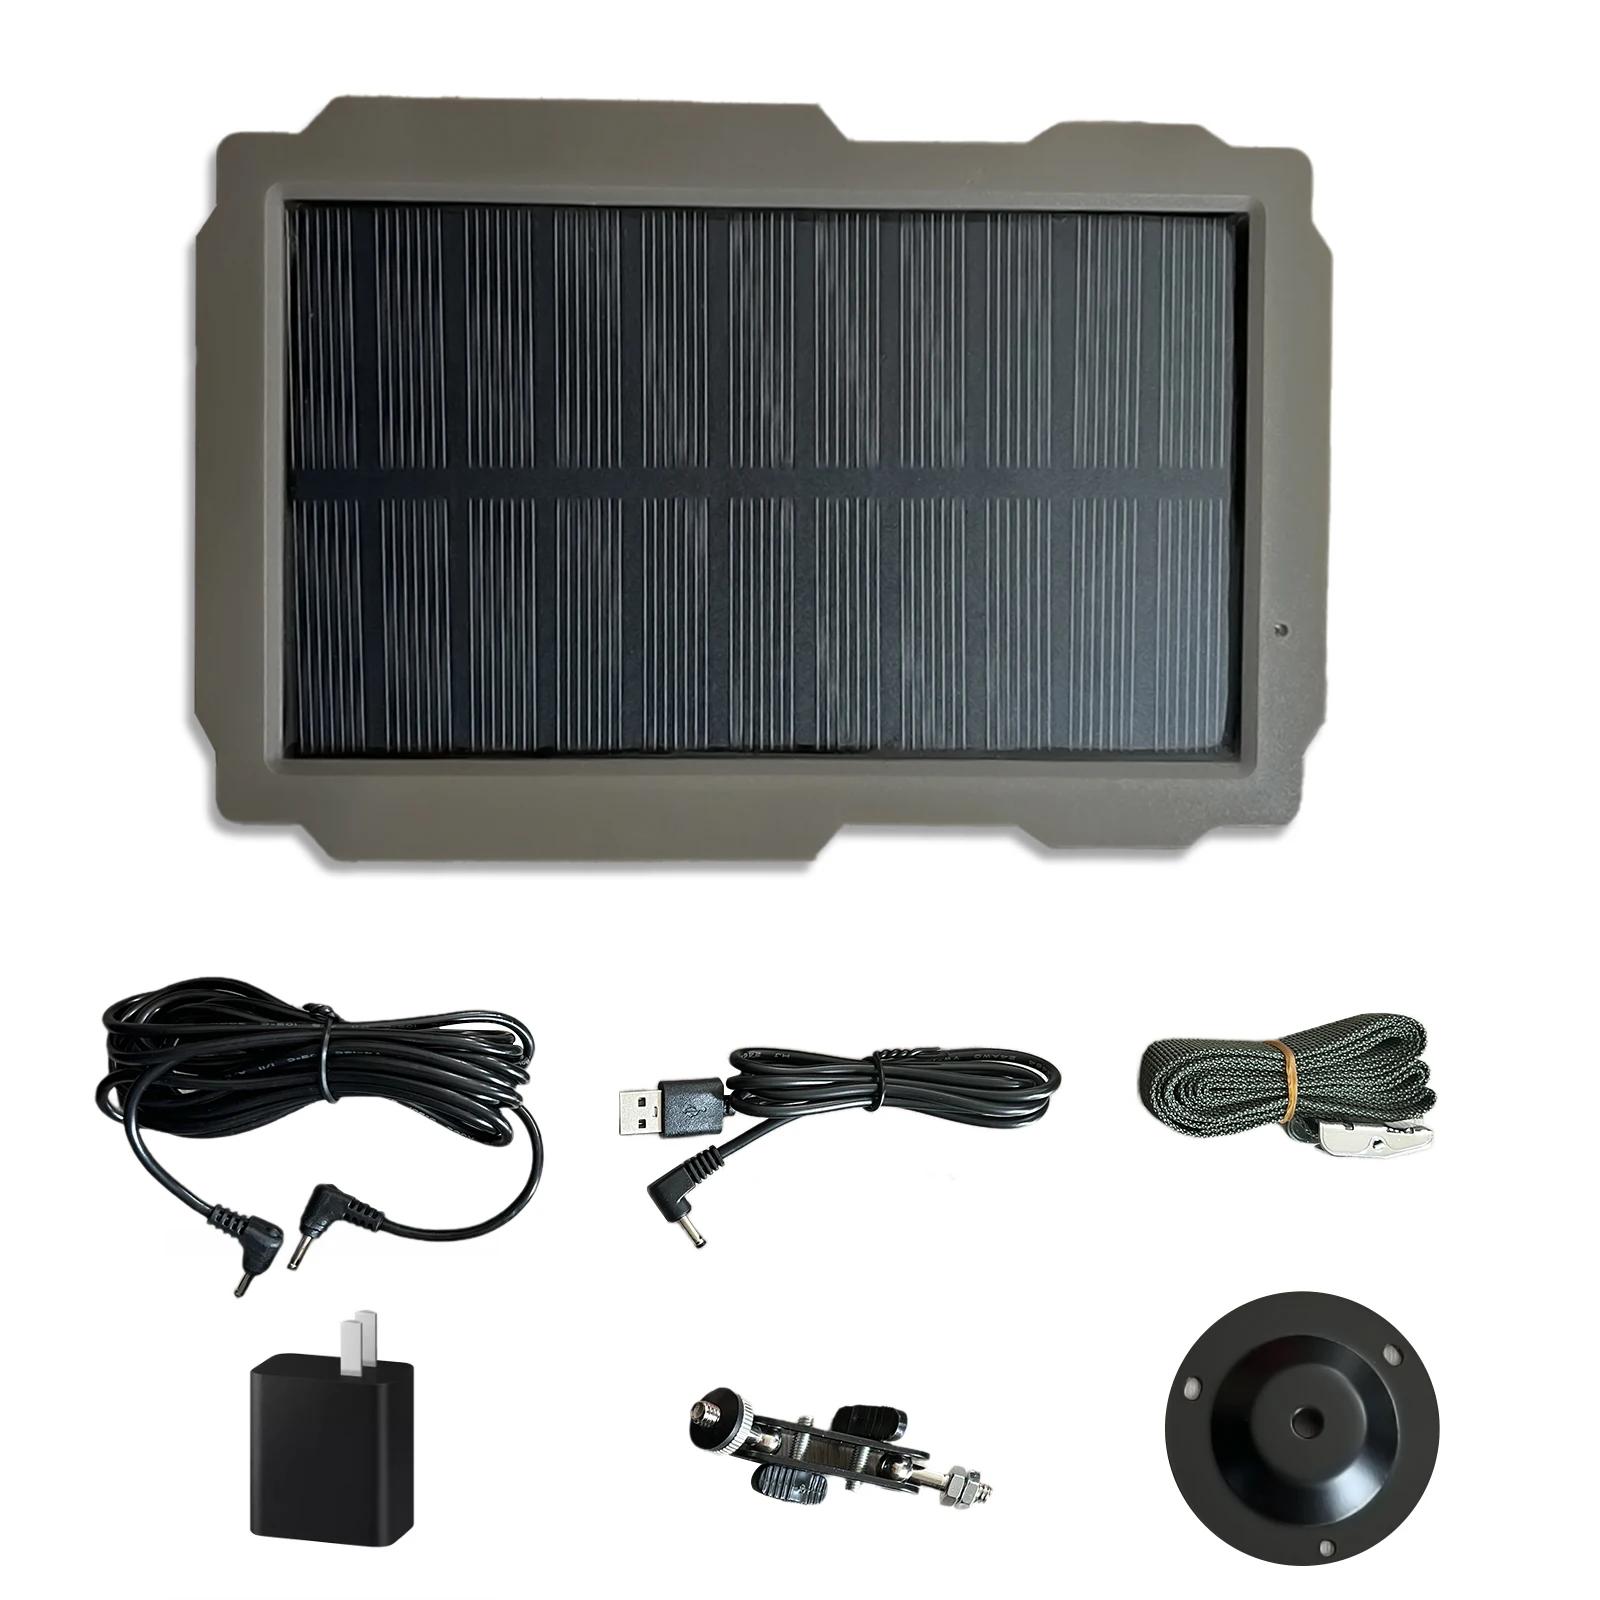 휴대용 트레일 게임 카메라 태양 전지 패널 키트, 사냥 카메라용 방수 충전식 태양열 충전기, 3000mAh, 6V-12V